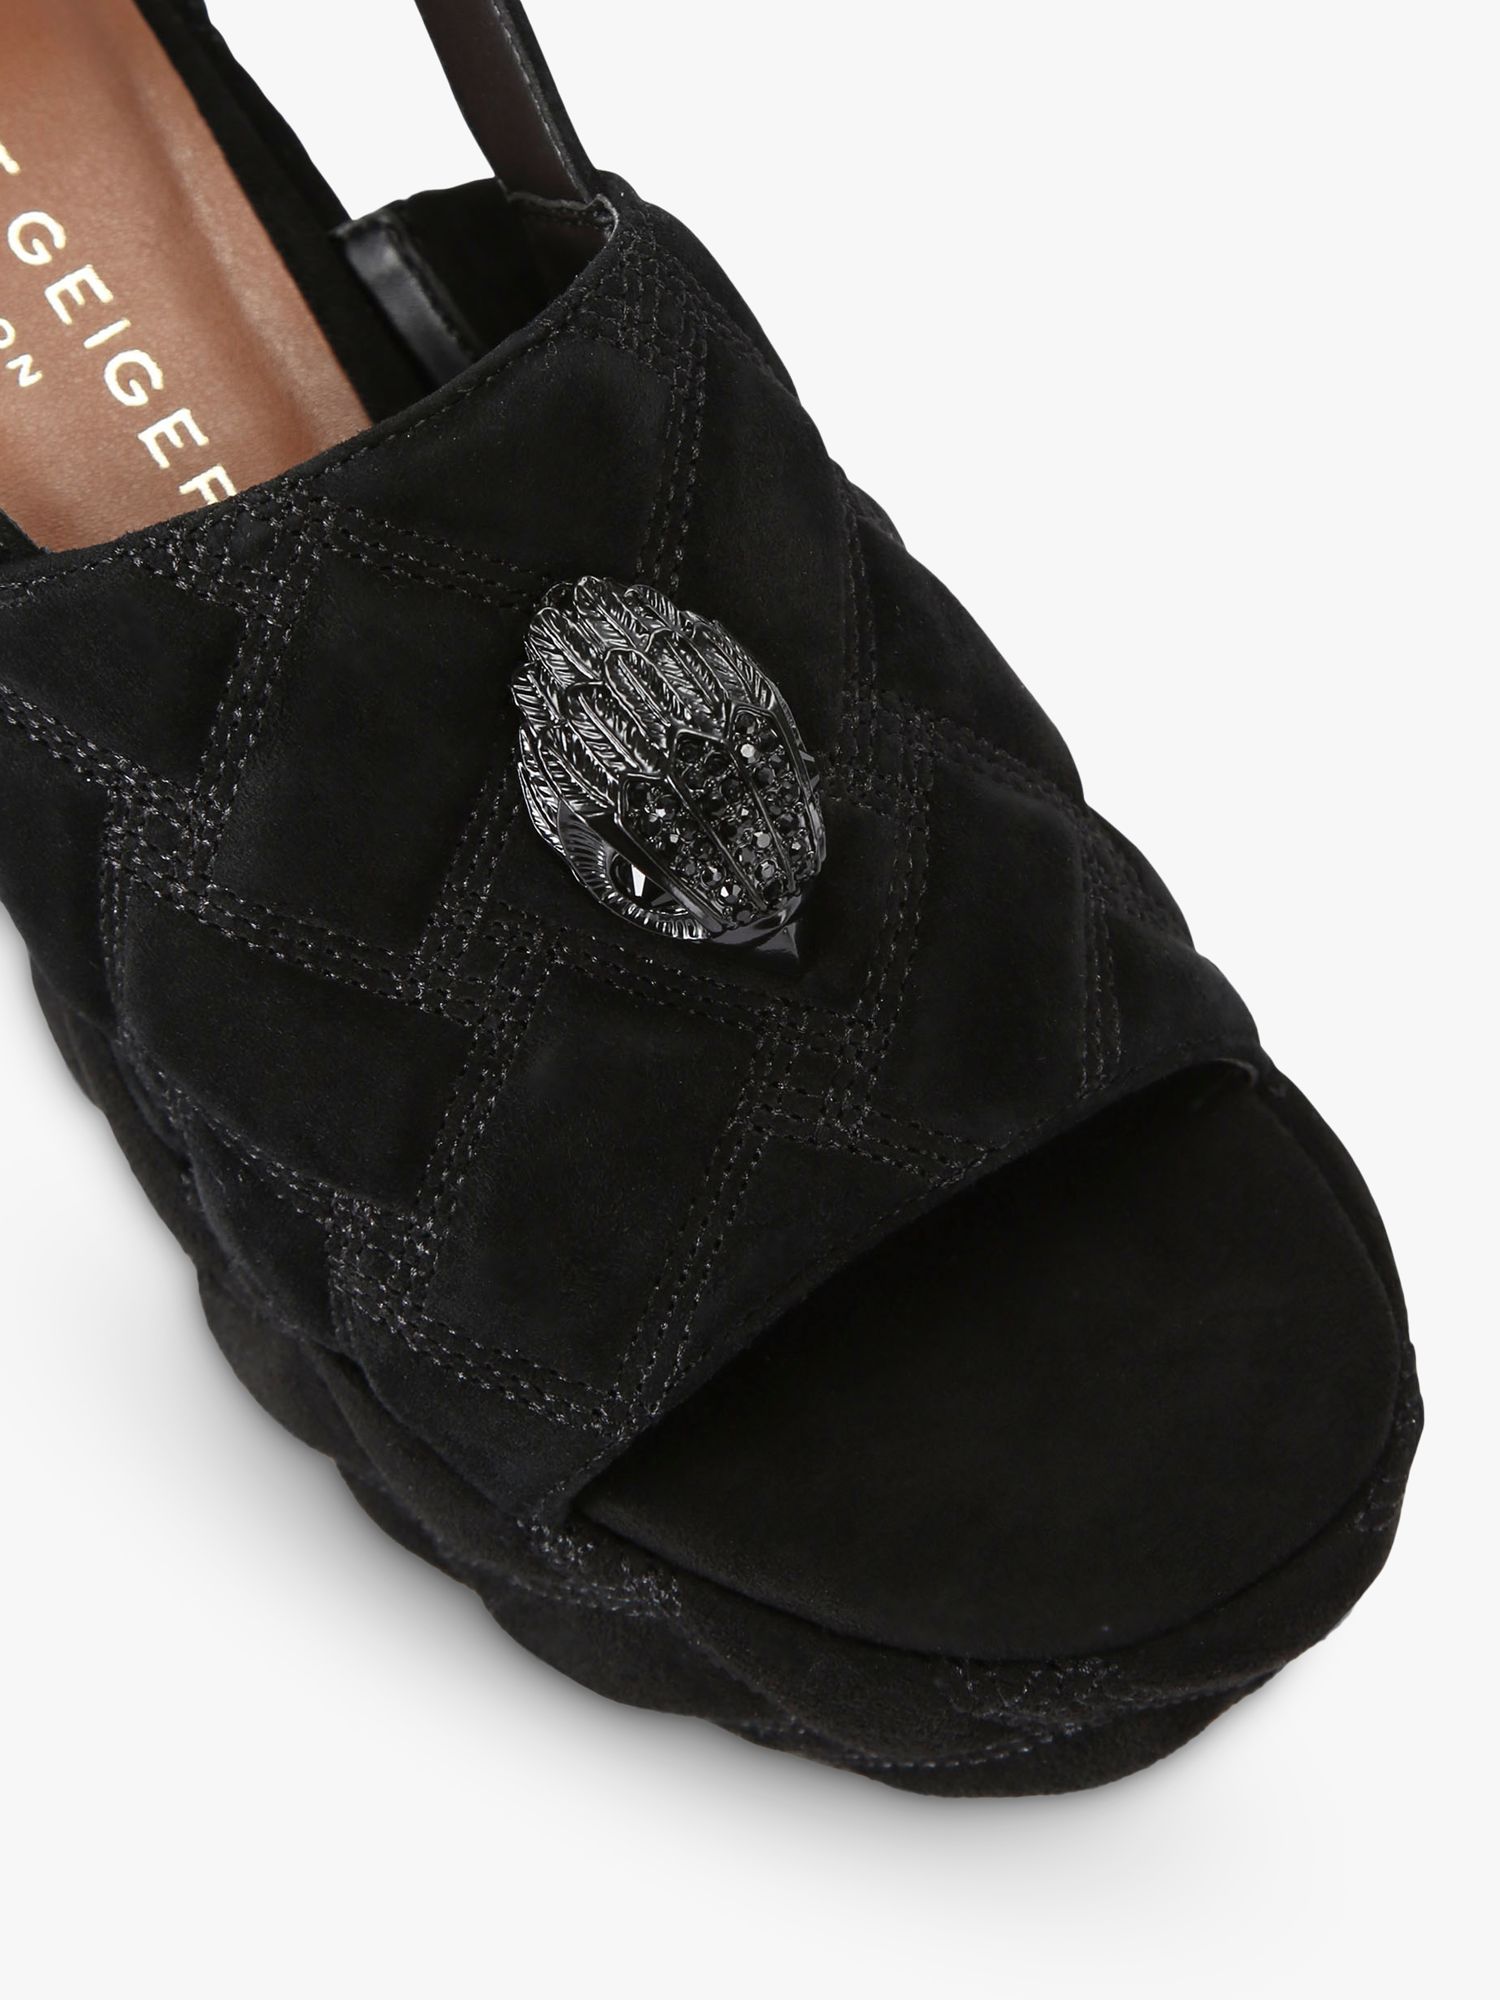 Buy Kurt Geiger London Kensington Suede Wedge Heel Sandals, Black Online at johnlewis.com